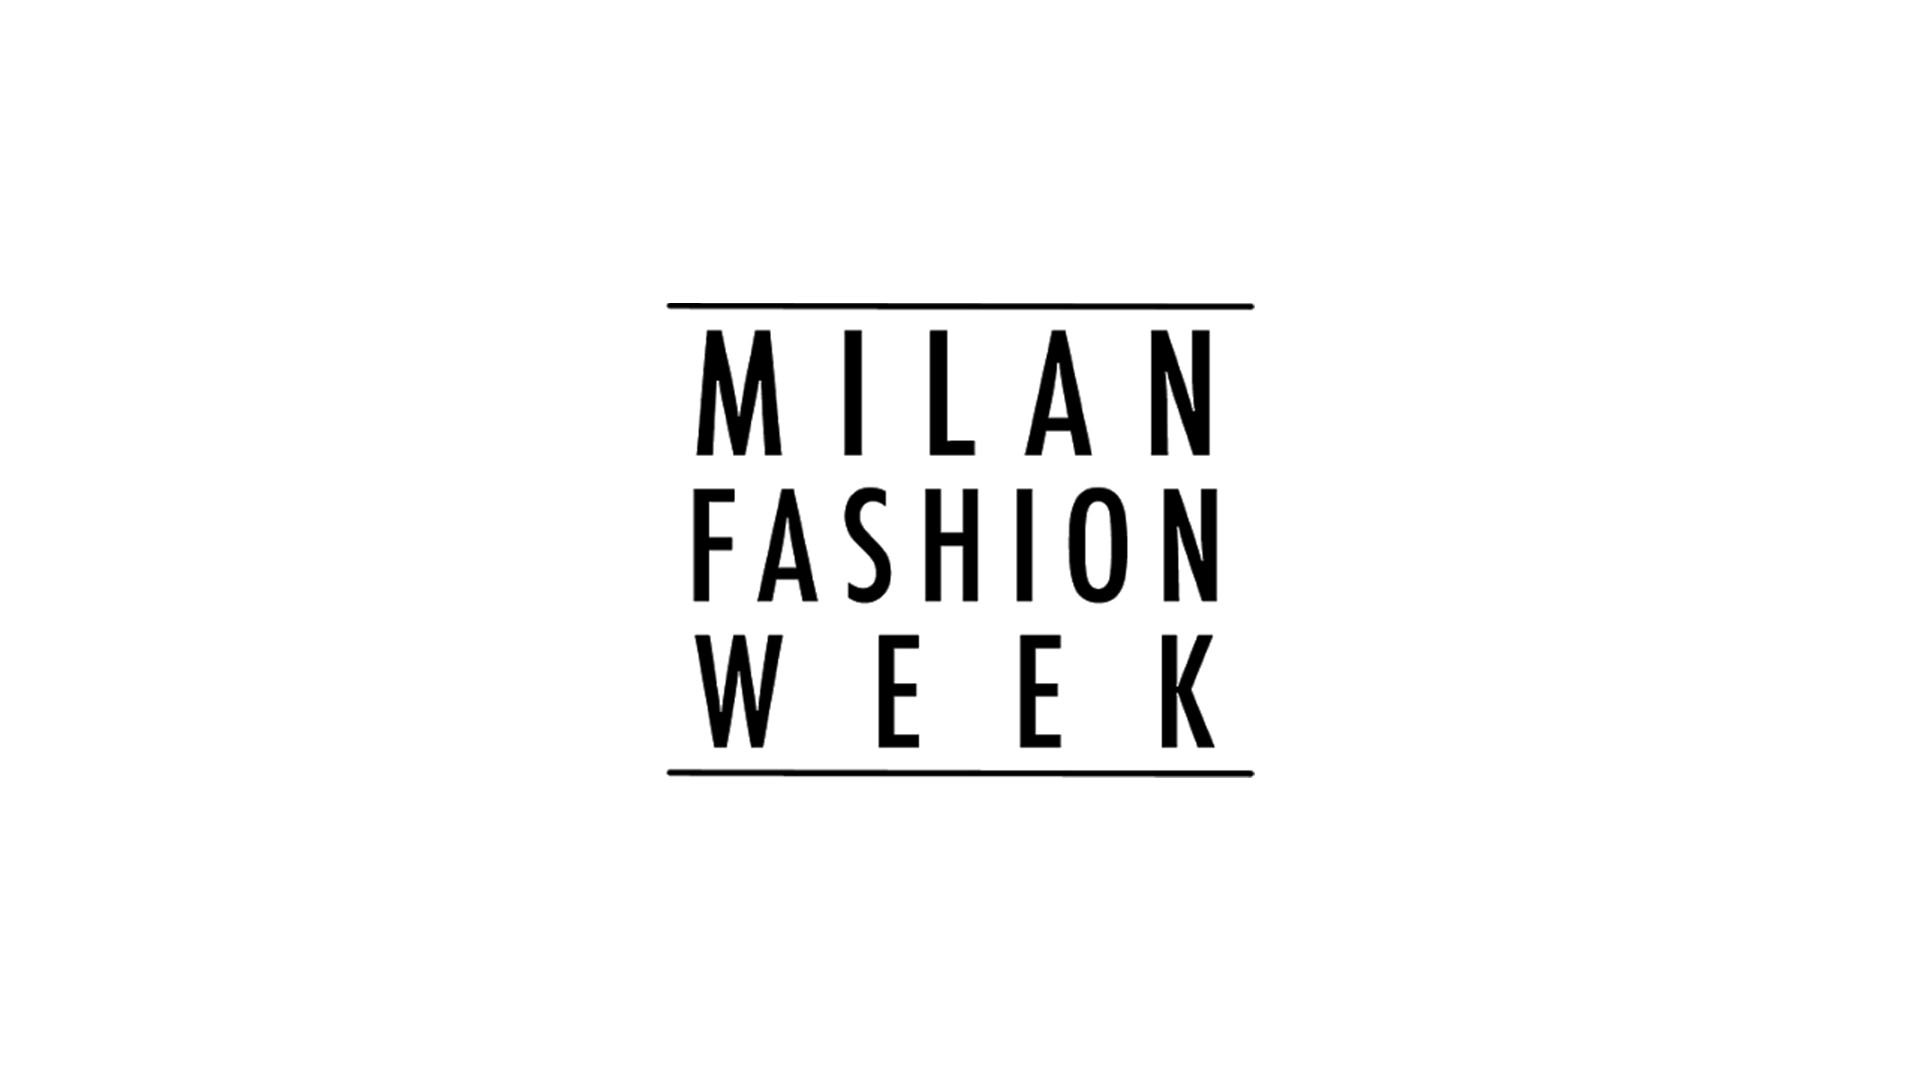 Milan fashion week 2021